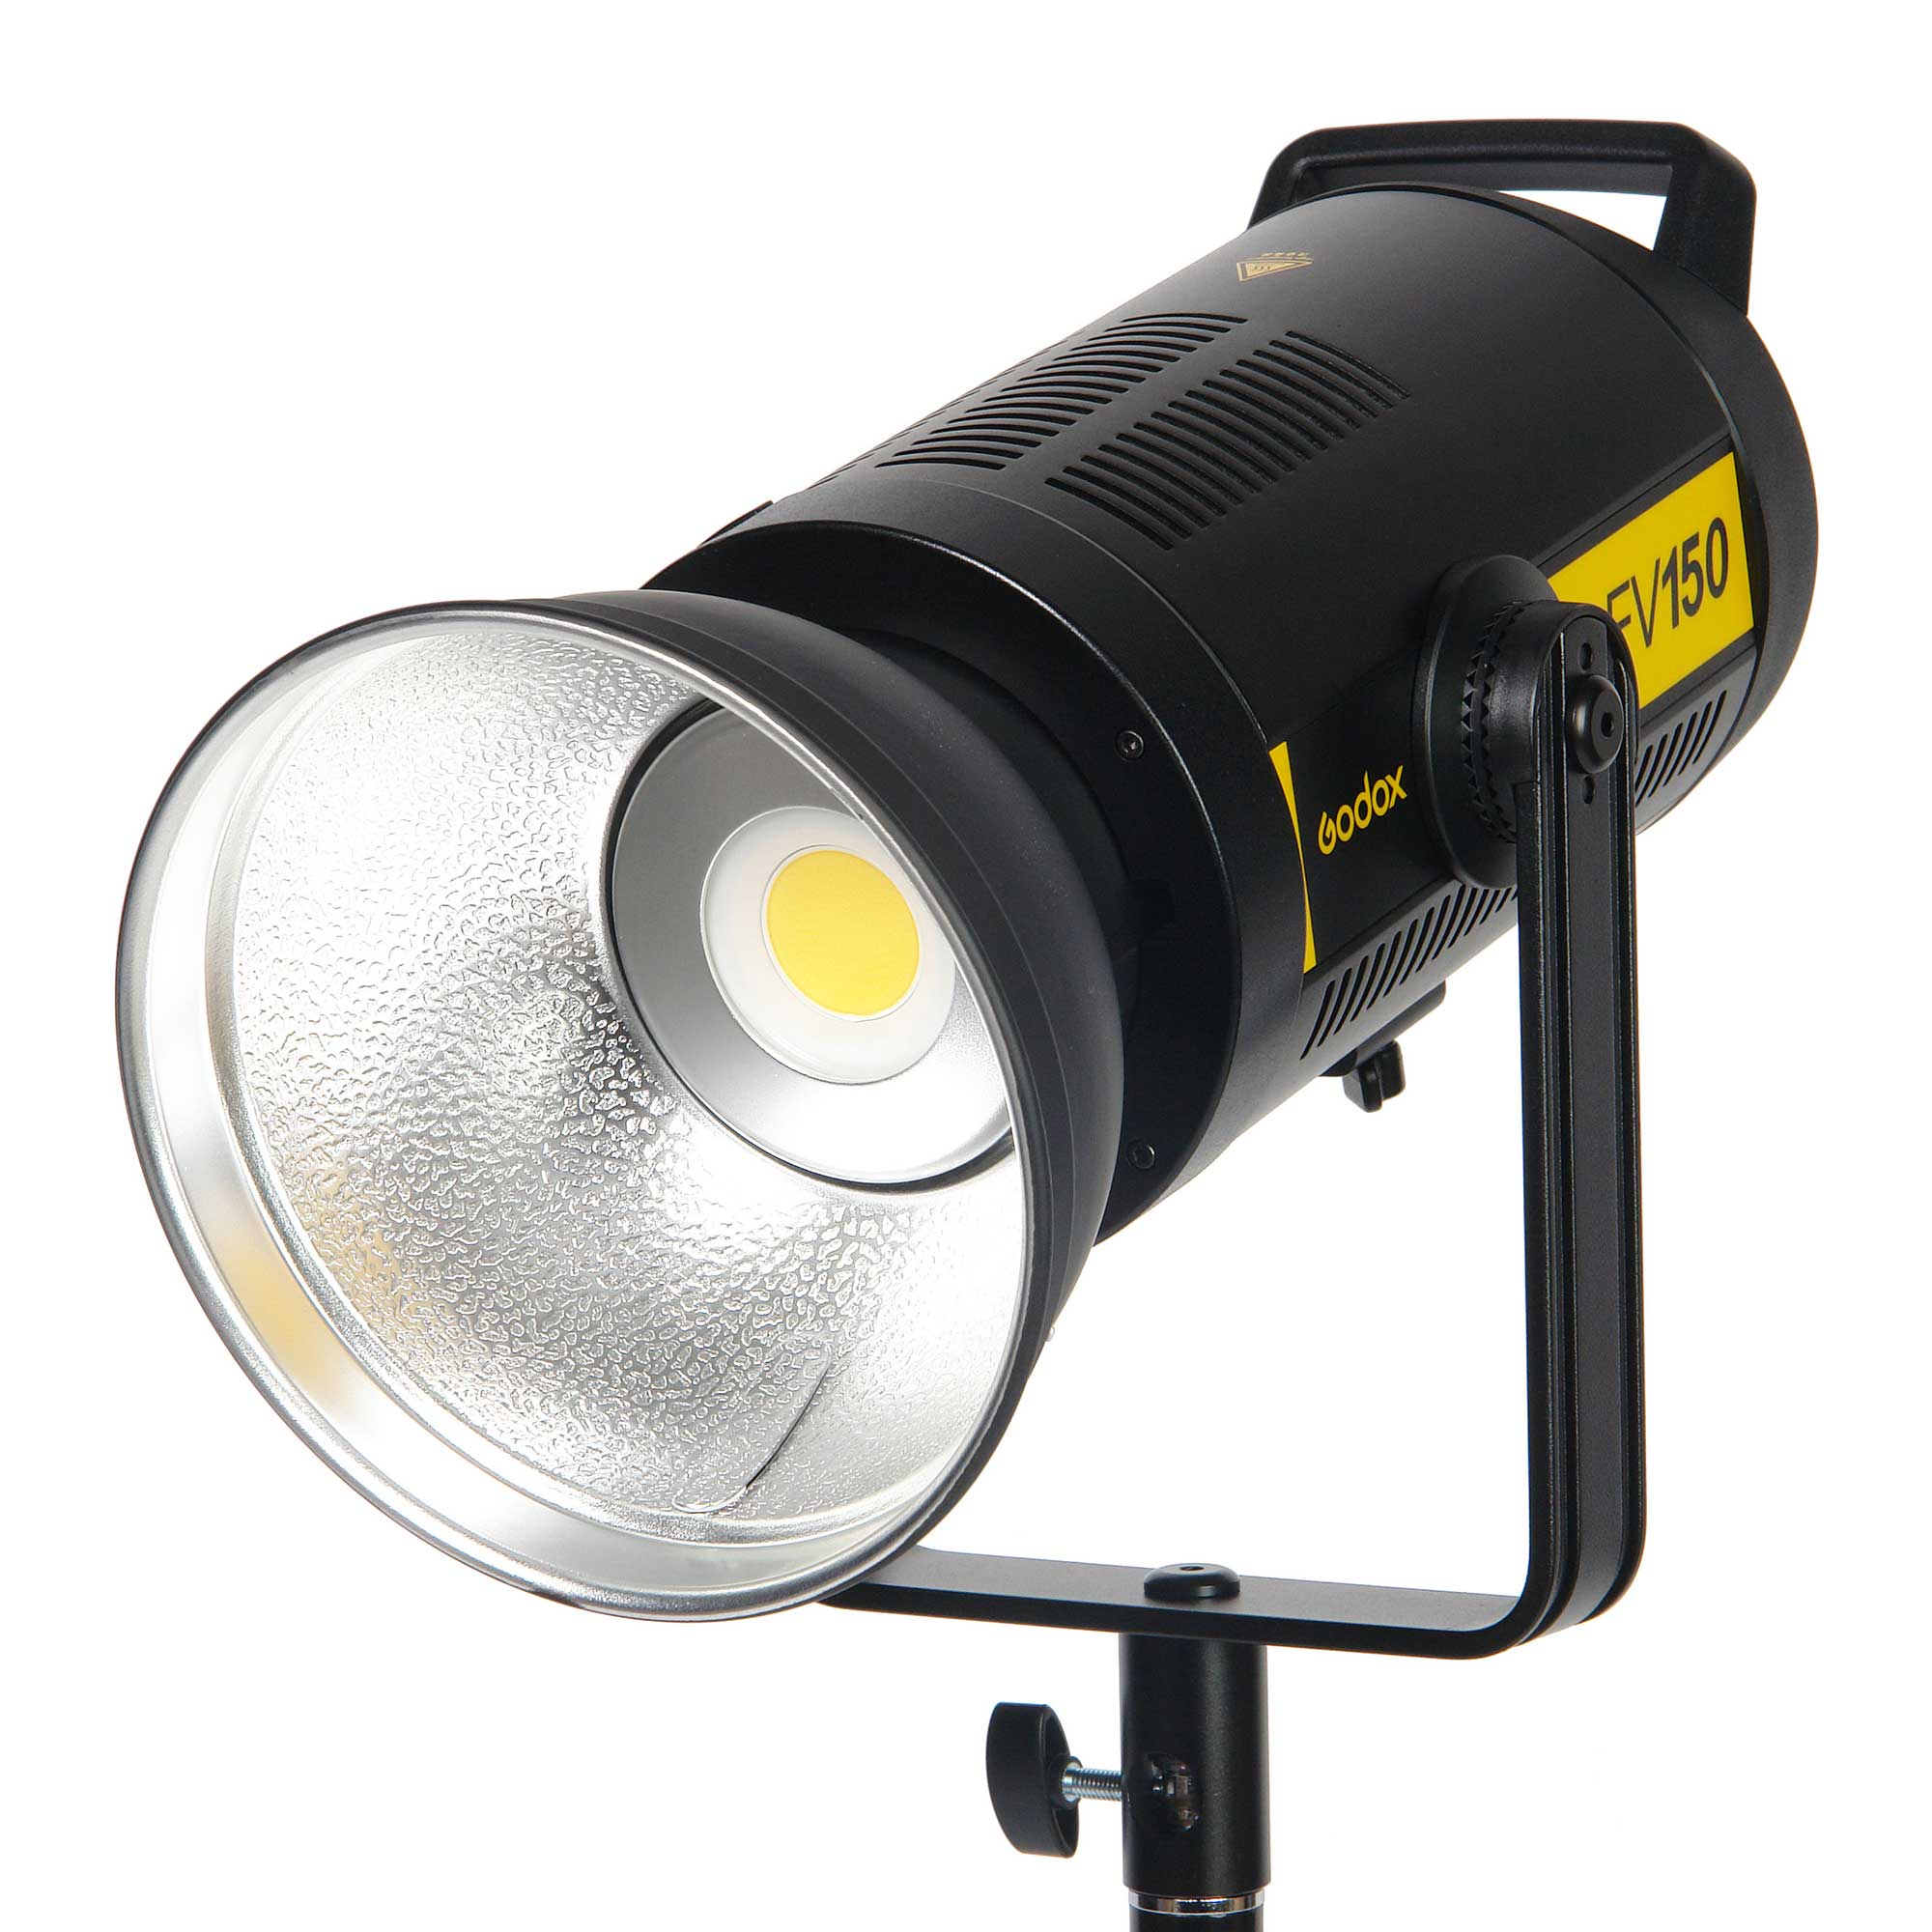 Осветитель светодиодный Godox FV150 с функцией вспышки (без пульта) фото